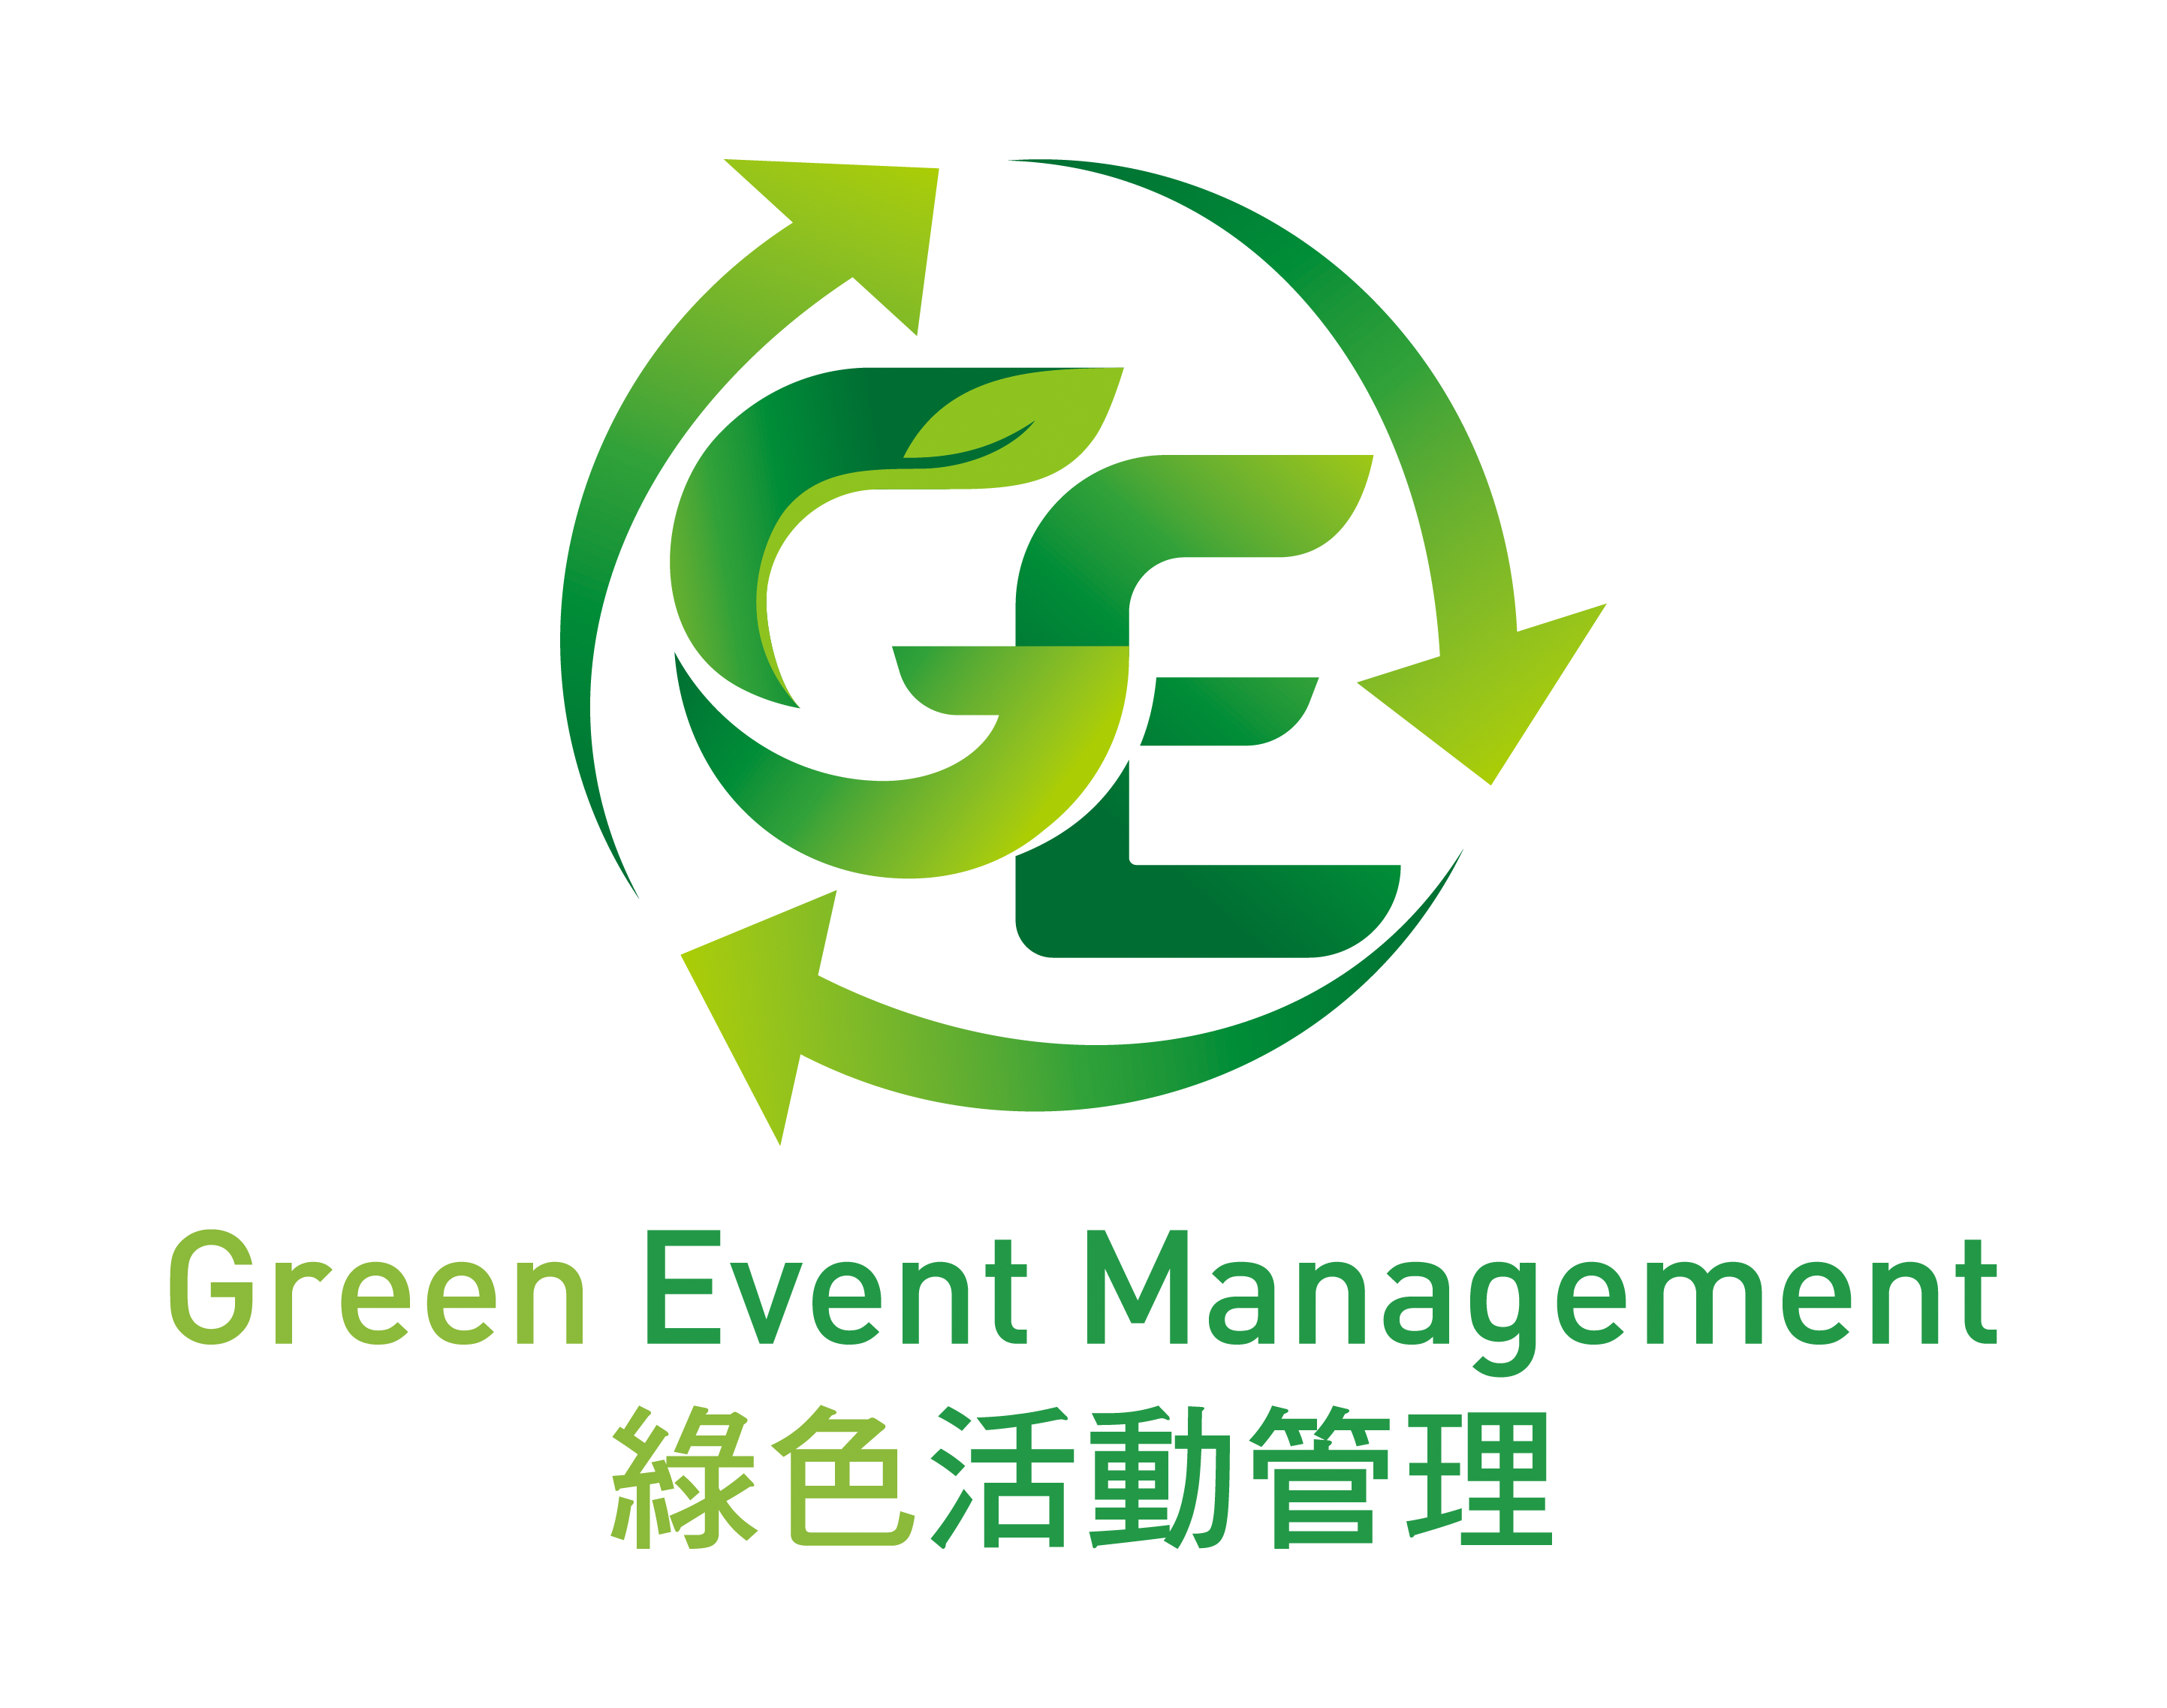 Green Event Management Logo